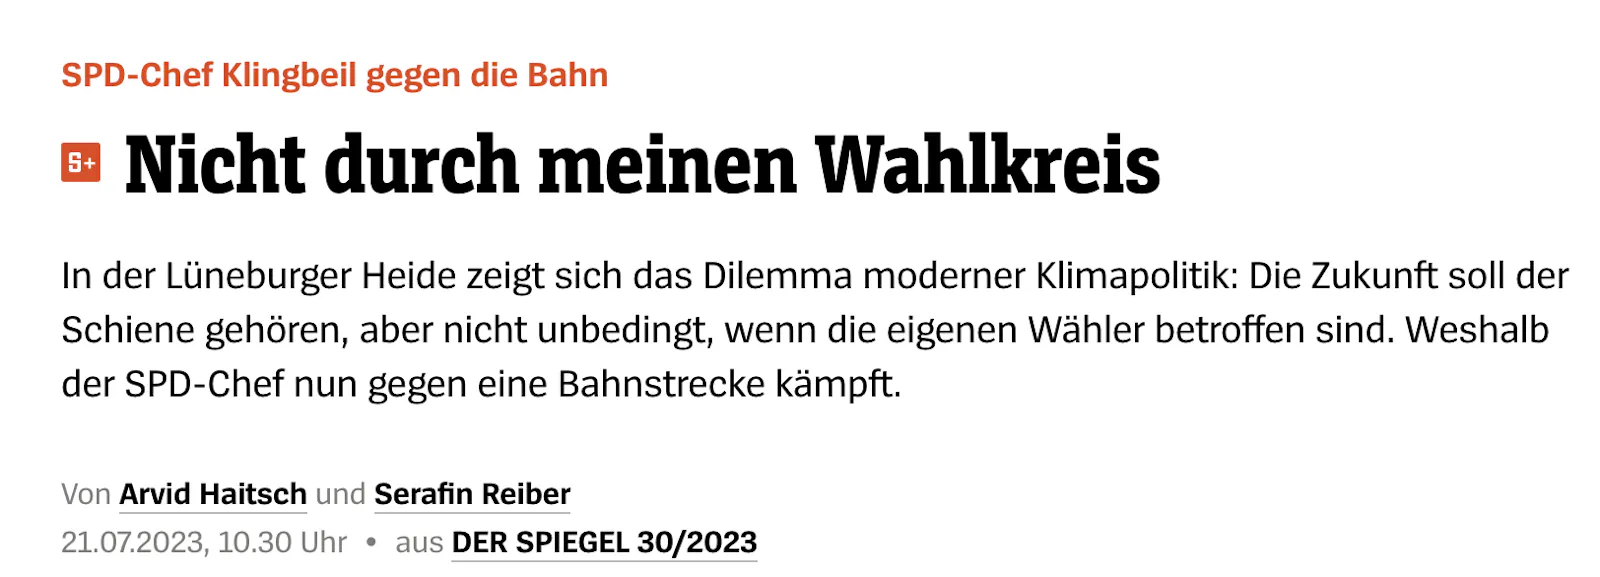 Nicht durch meinen Wahlkreis. SPD-Chef Klingbeil kämpft gegen eine Bahnstrecke.